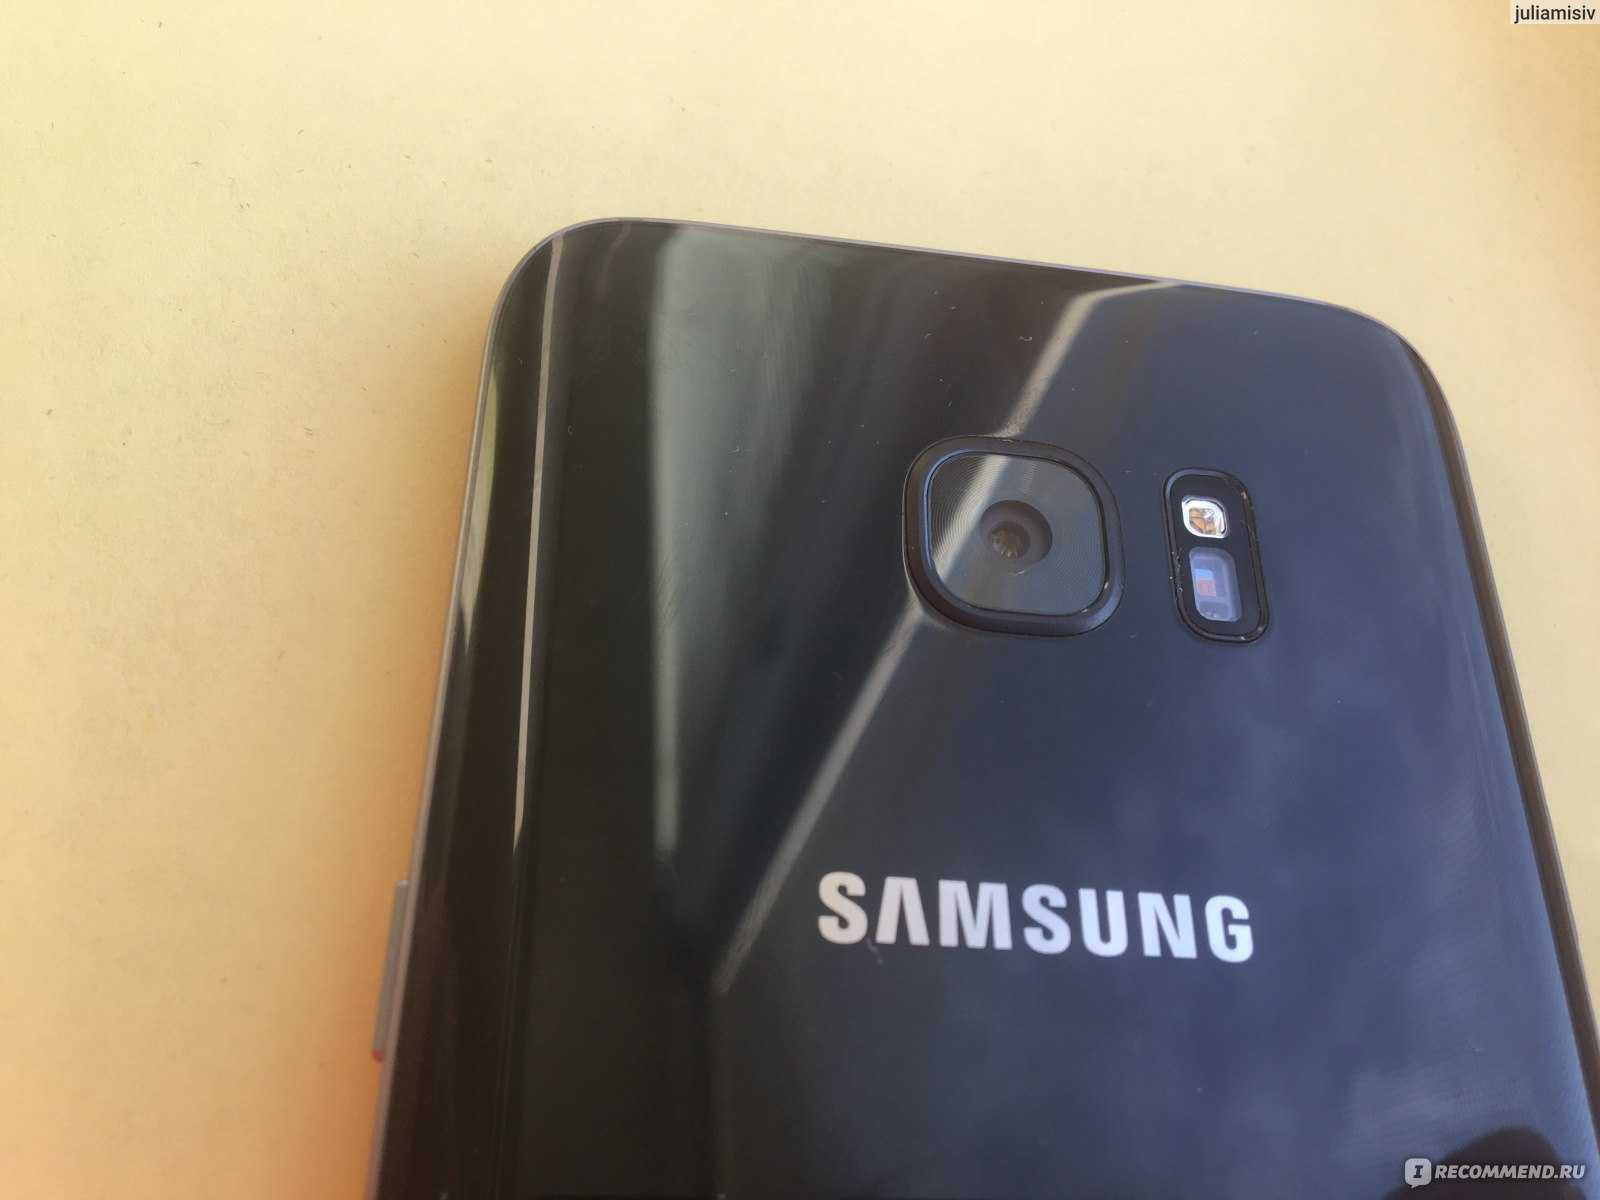 Samsung готовит к выходу флагманский смартфон s21 ultra с камерой небывалых размеров. видео - cnews